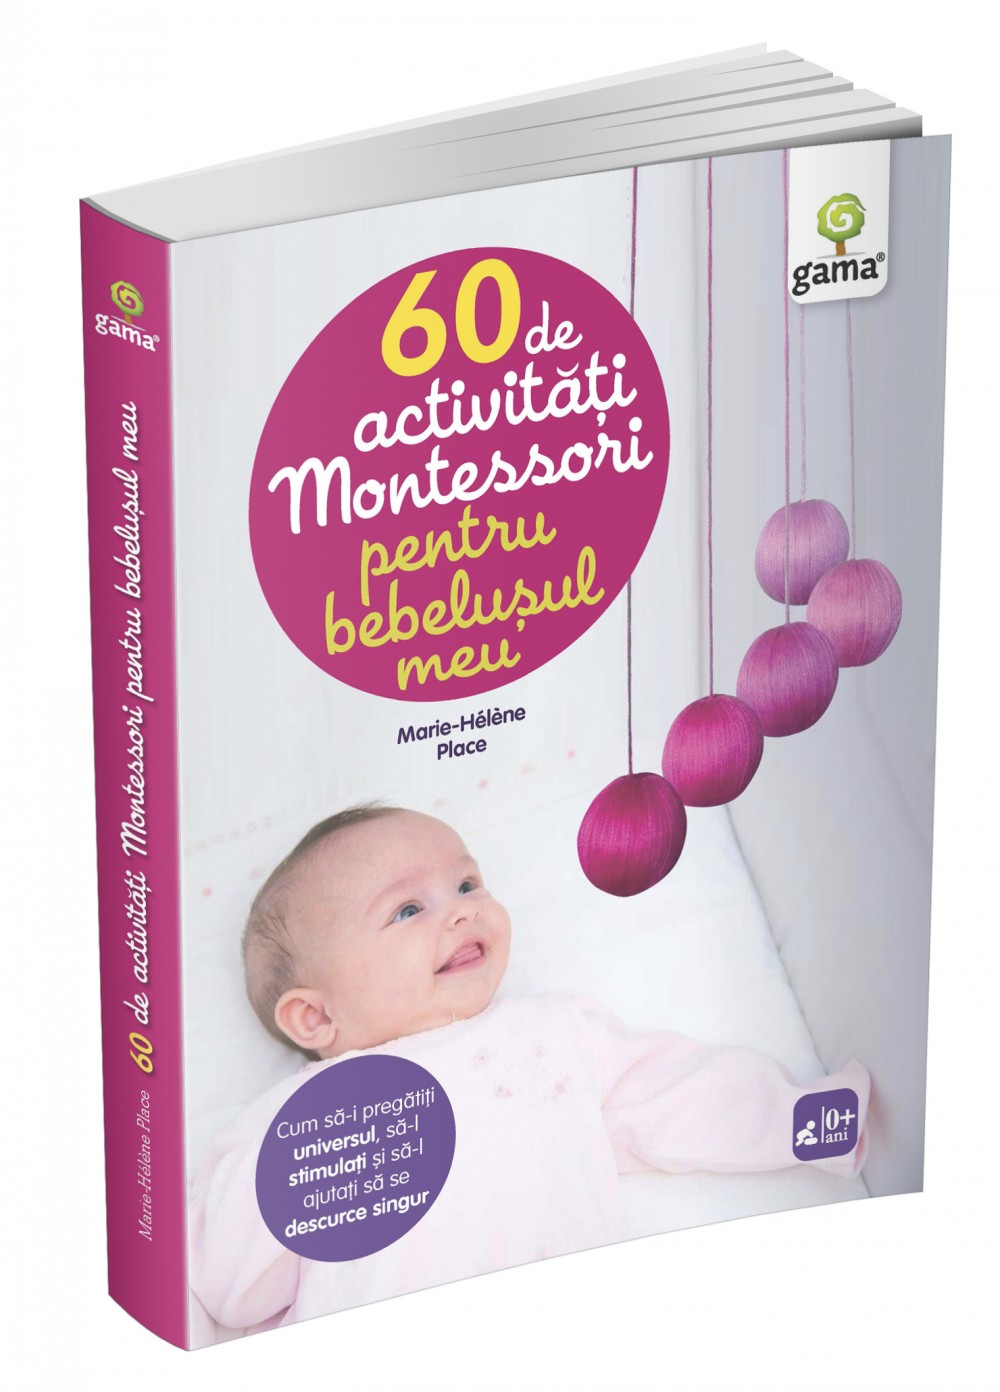 60 de activităţi Montessori pentru bebeluşul meu